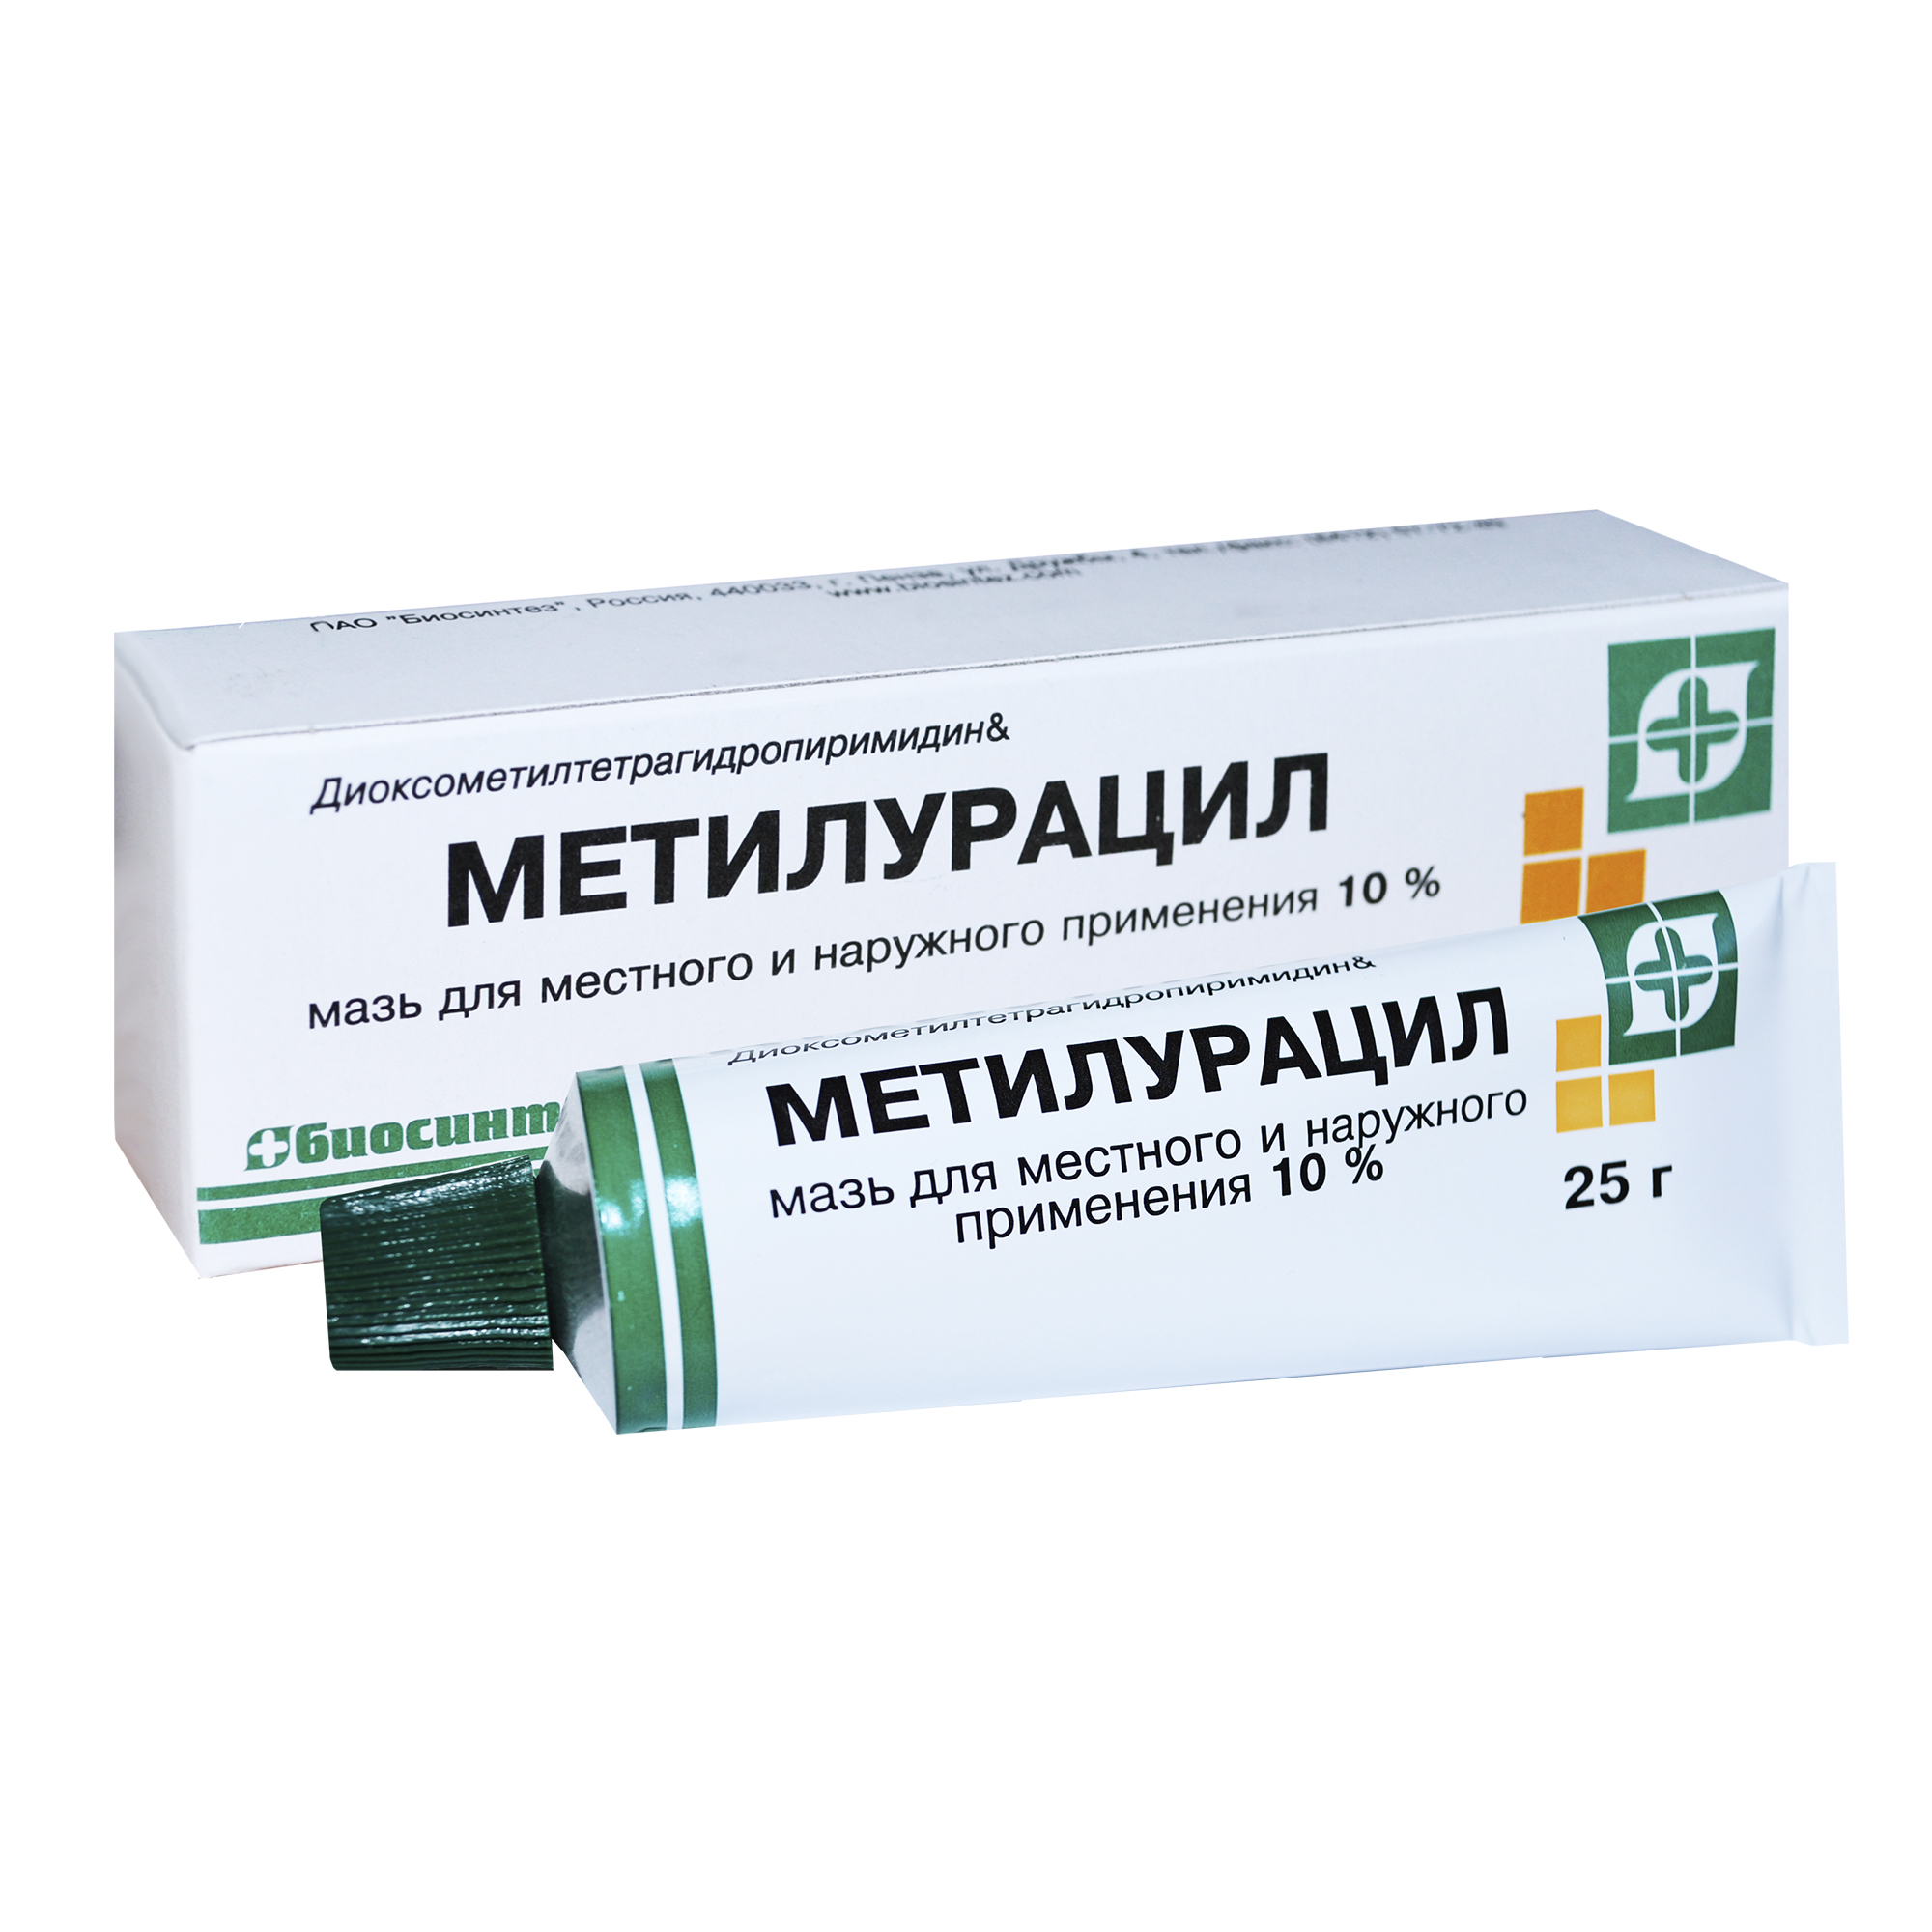 Можно применять метилурациловую. Метилурацил мазь 10% , 25 г Биосинтез. Метилурацил мазь диоксометилтетрагидропиримидин. Мазь заживляющая метилурациловая. Мазь ранозаживляющая Метилурацил.